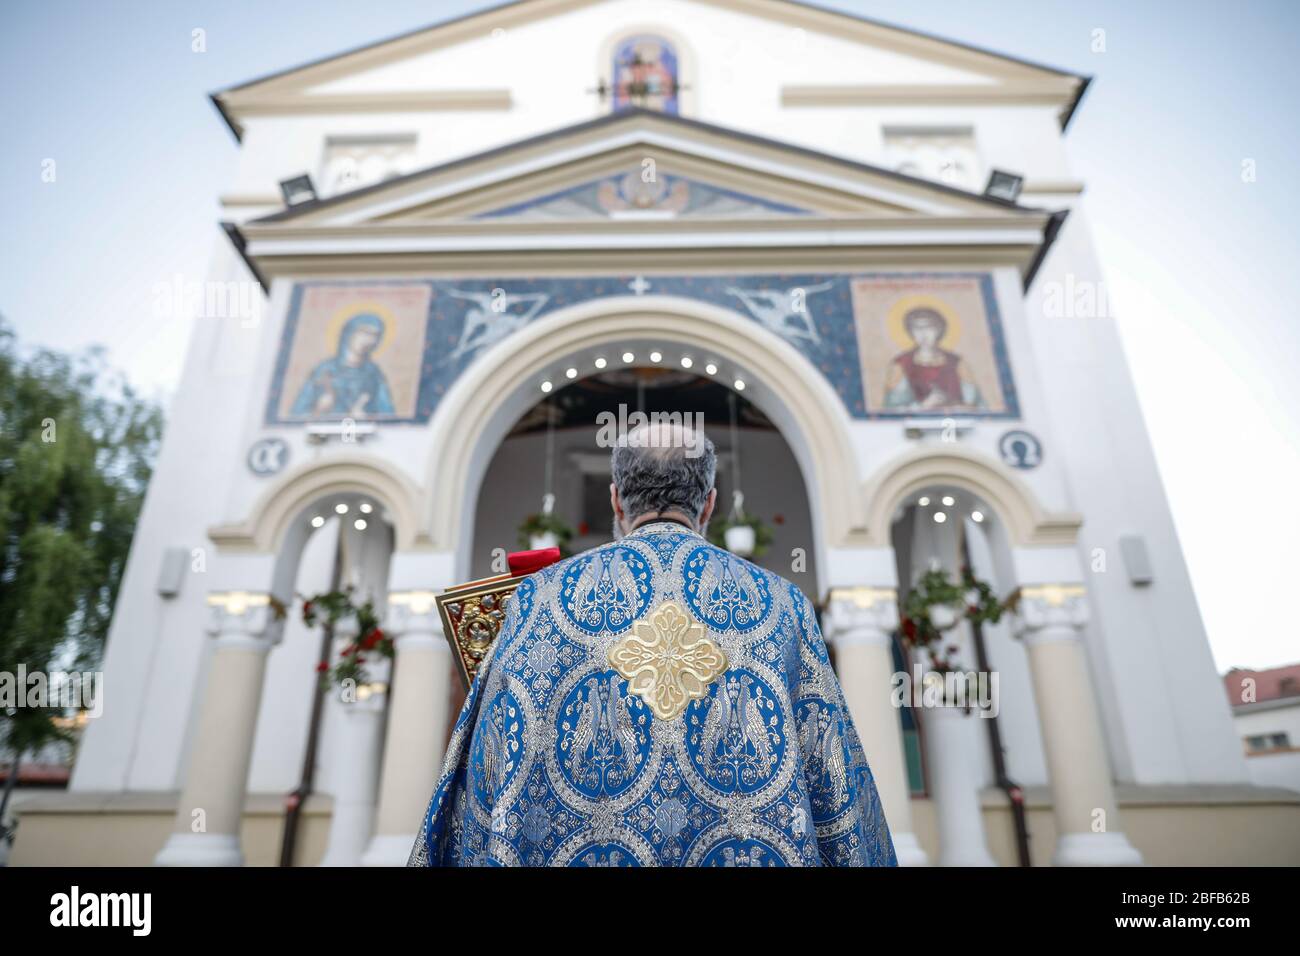 Geringe Schärfentiefe (selektiver Fokus) Details mit einem rumänischen orthodoxen christlichen Priester, der eine Heilige Bibel vor einer Kirche hält. Stockfoto